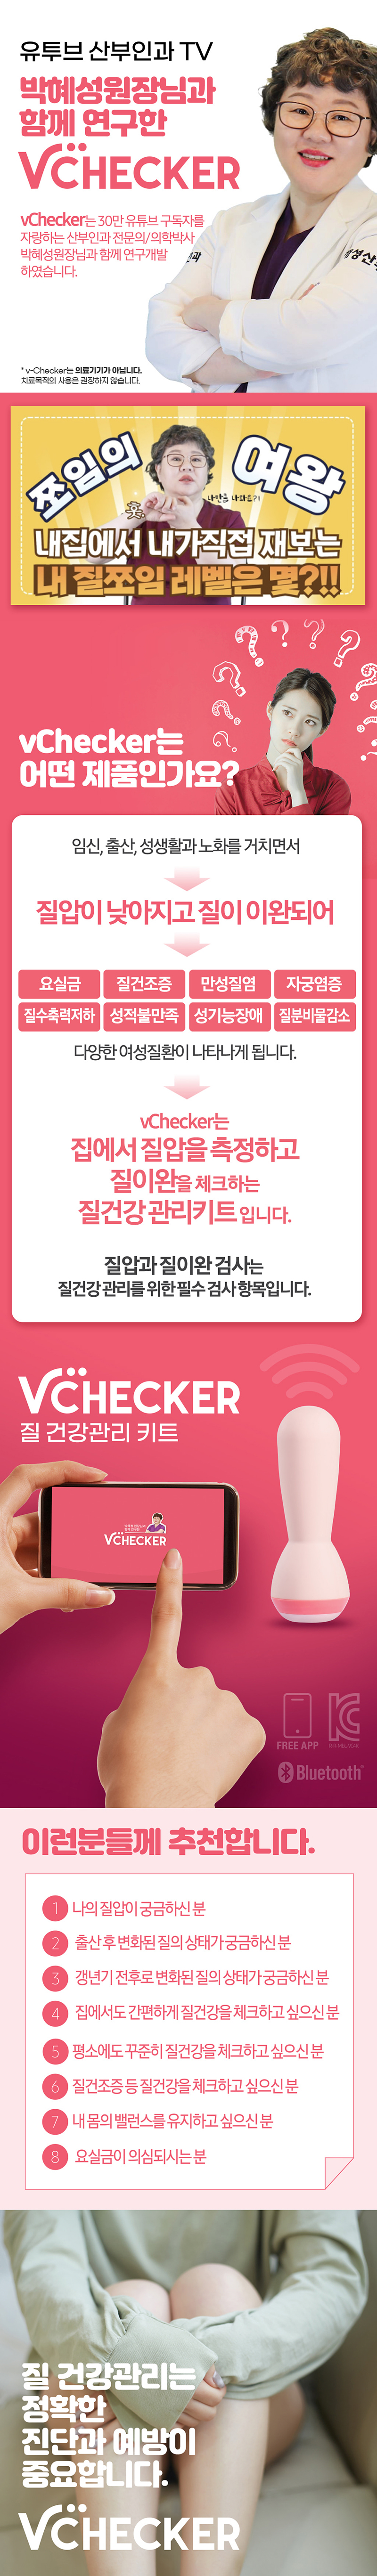 [셀프 질압 측정기] 브이체커(V-Checker)